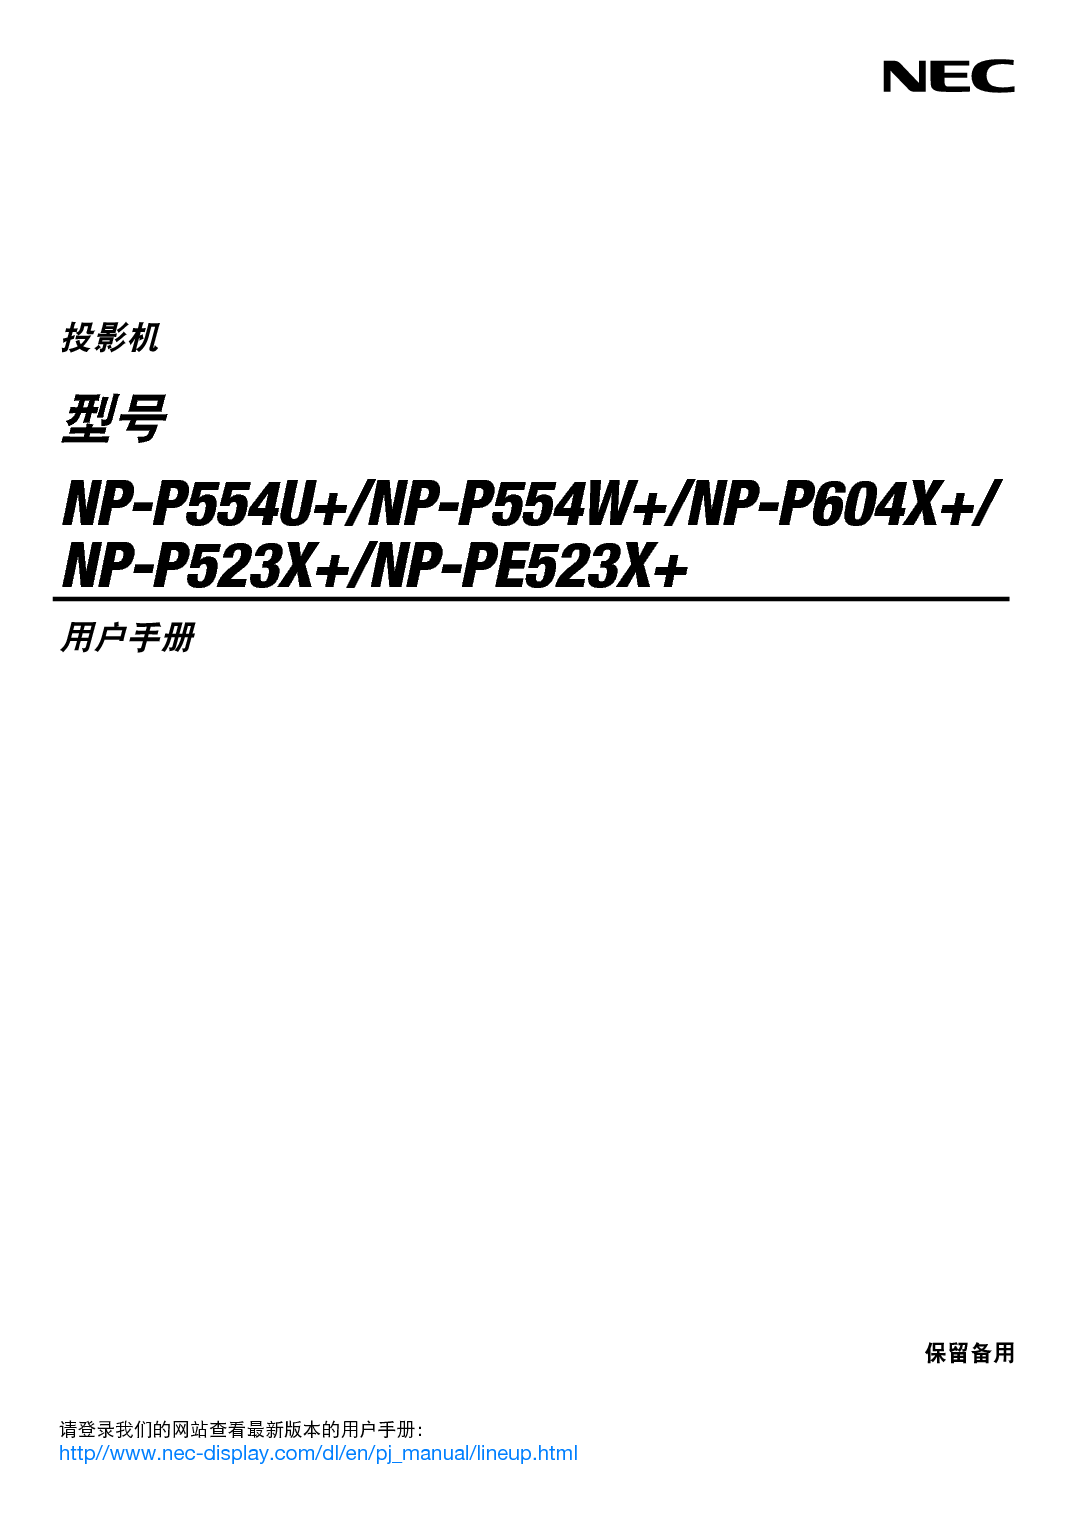 NEC NP-P523X+ 用户手册 封面